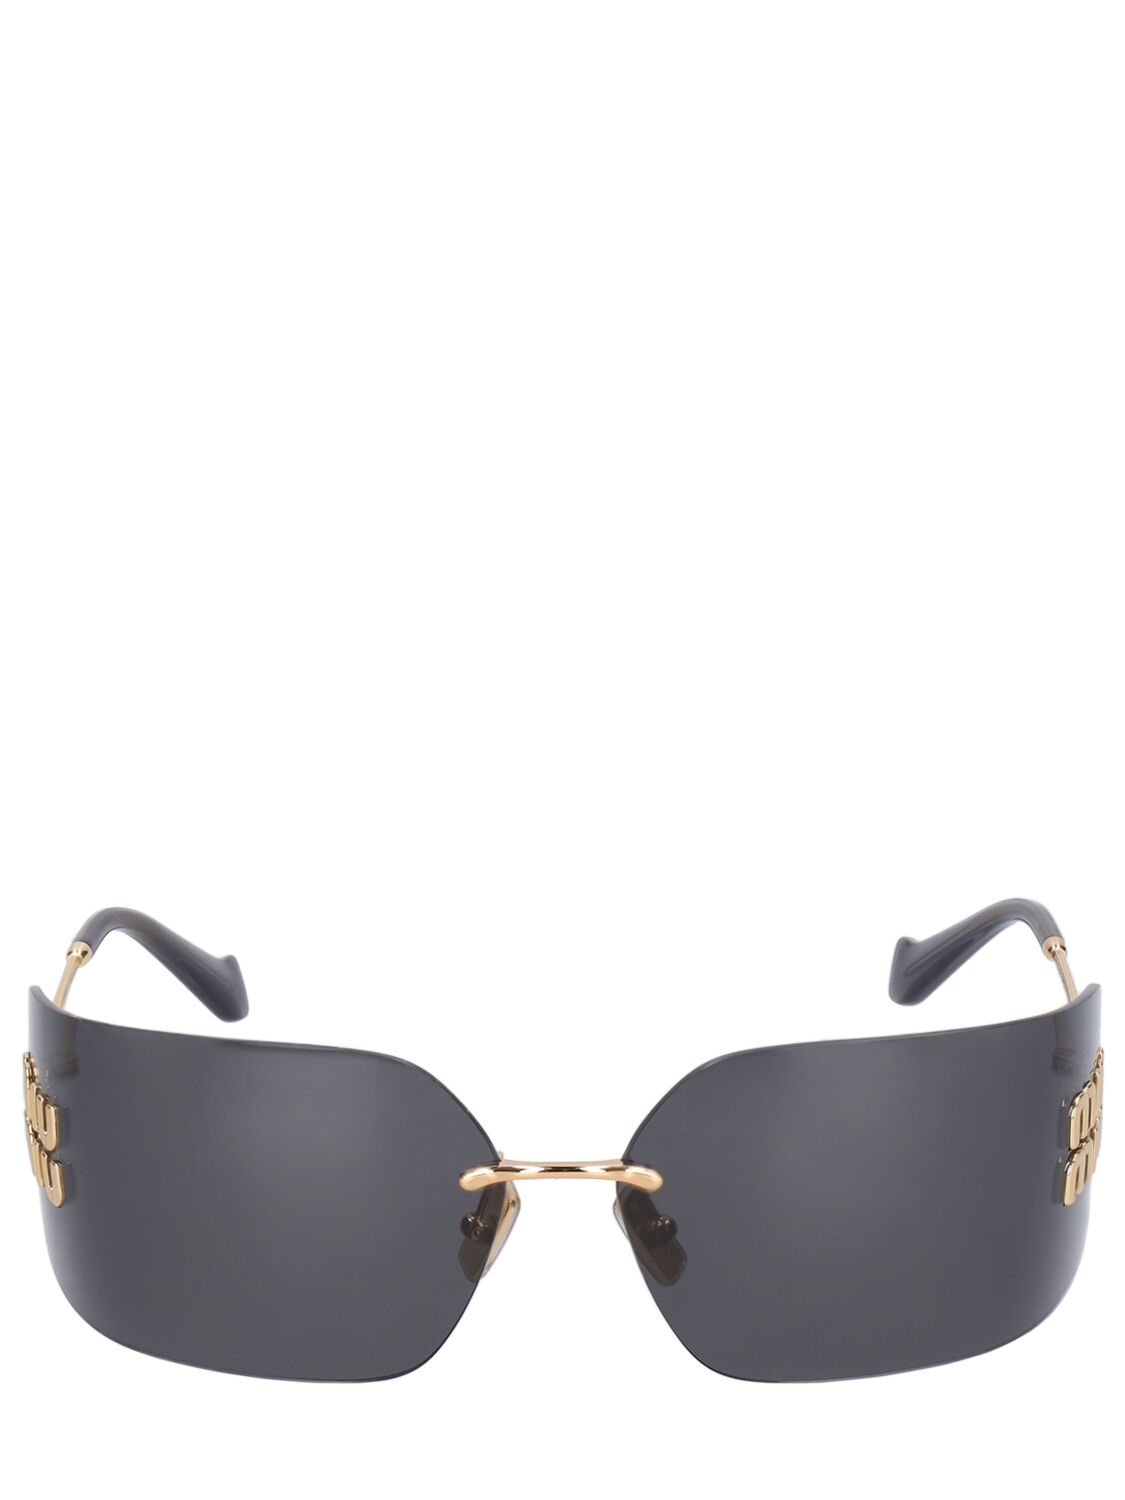 Miu Miu Mask Metal Sunglasses In Gold,dark Grey